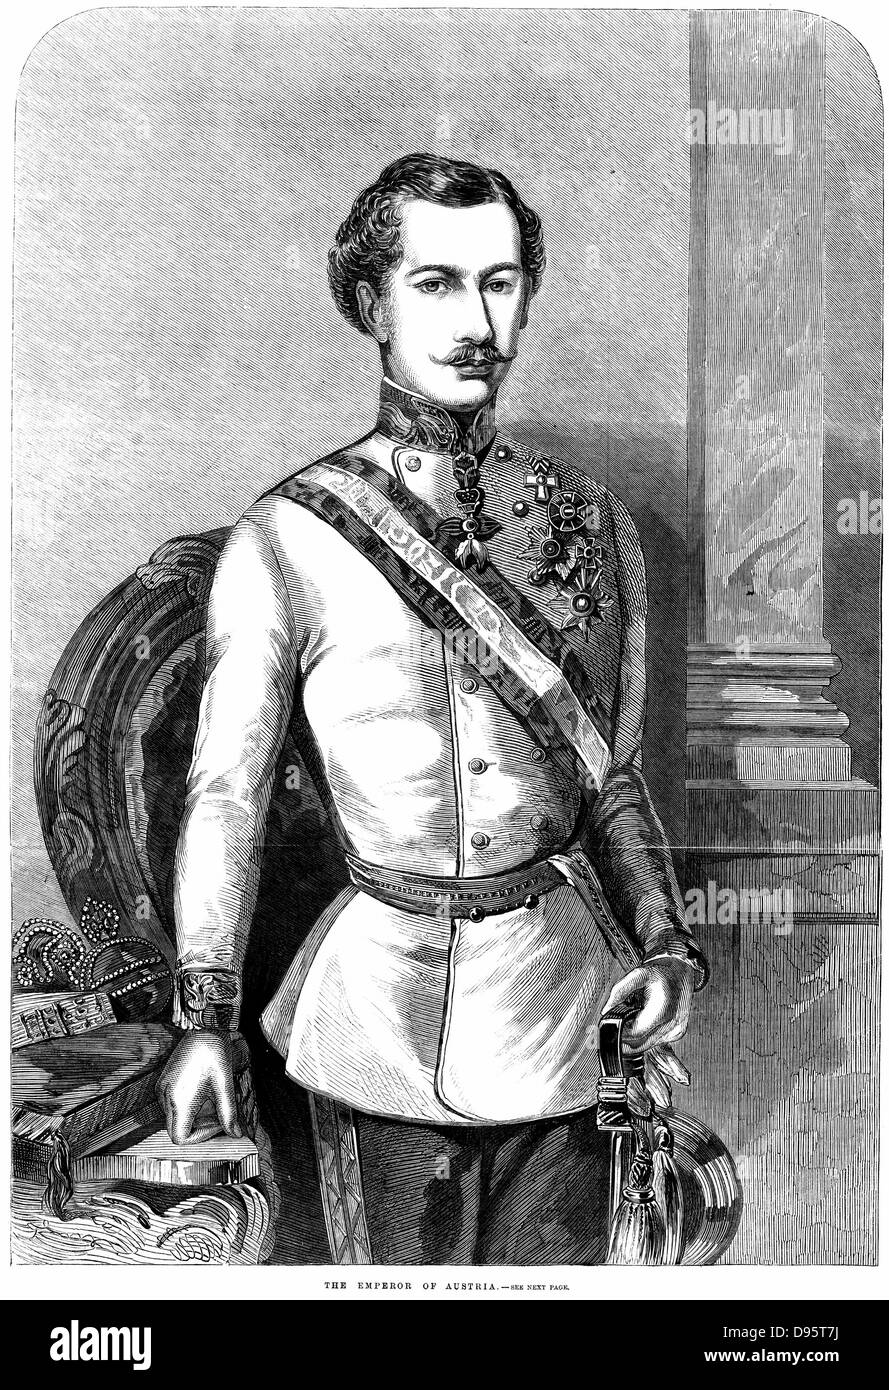 Franz Joseph I (1830-1916) l'imperatore d'Austria 1848. Incisione del 1859 Foto Stock